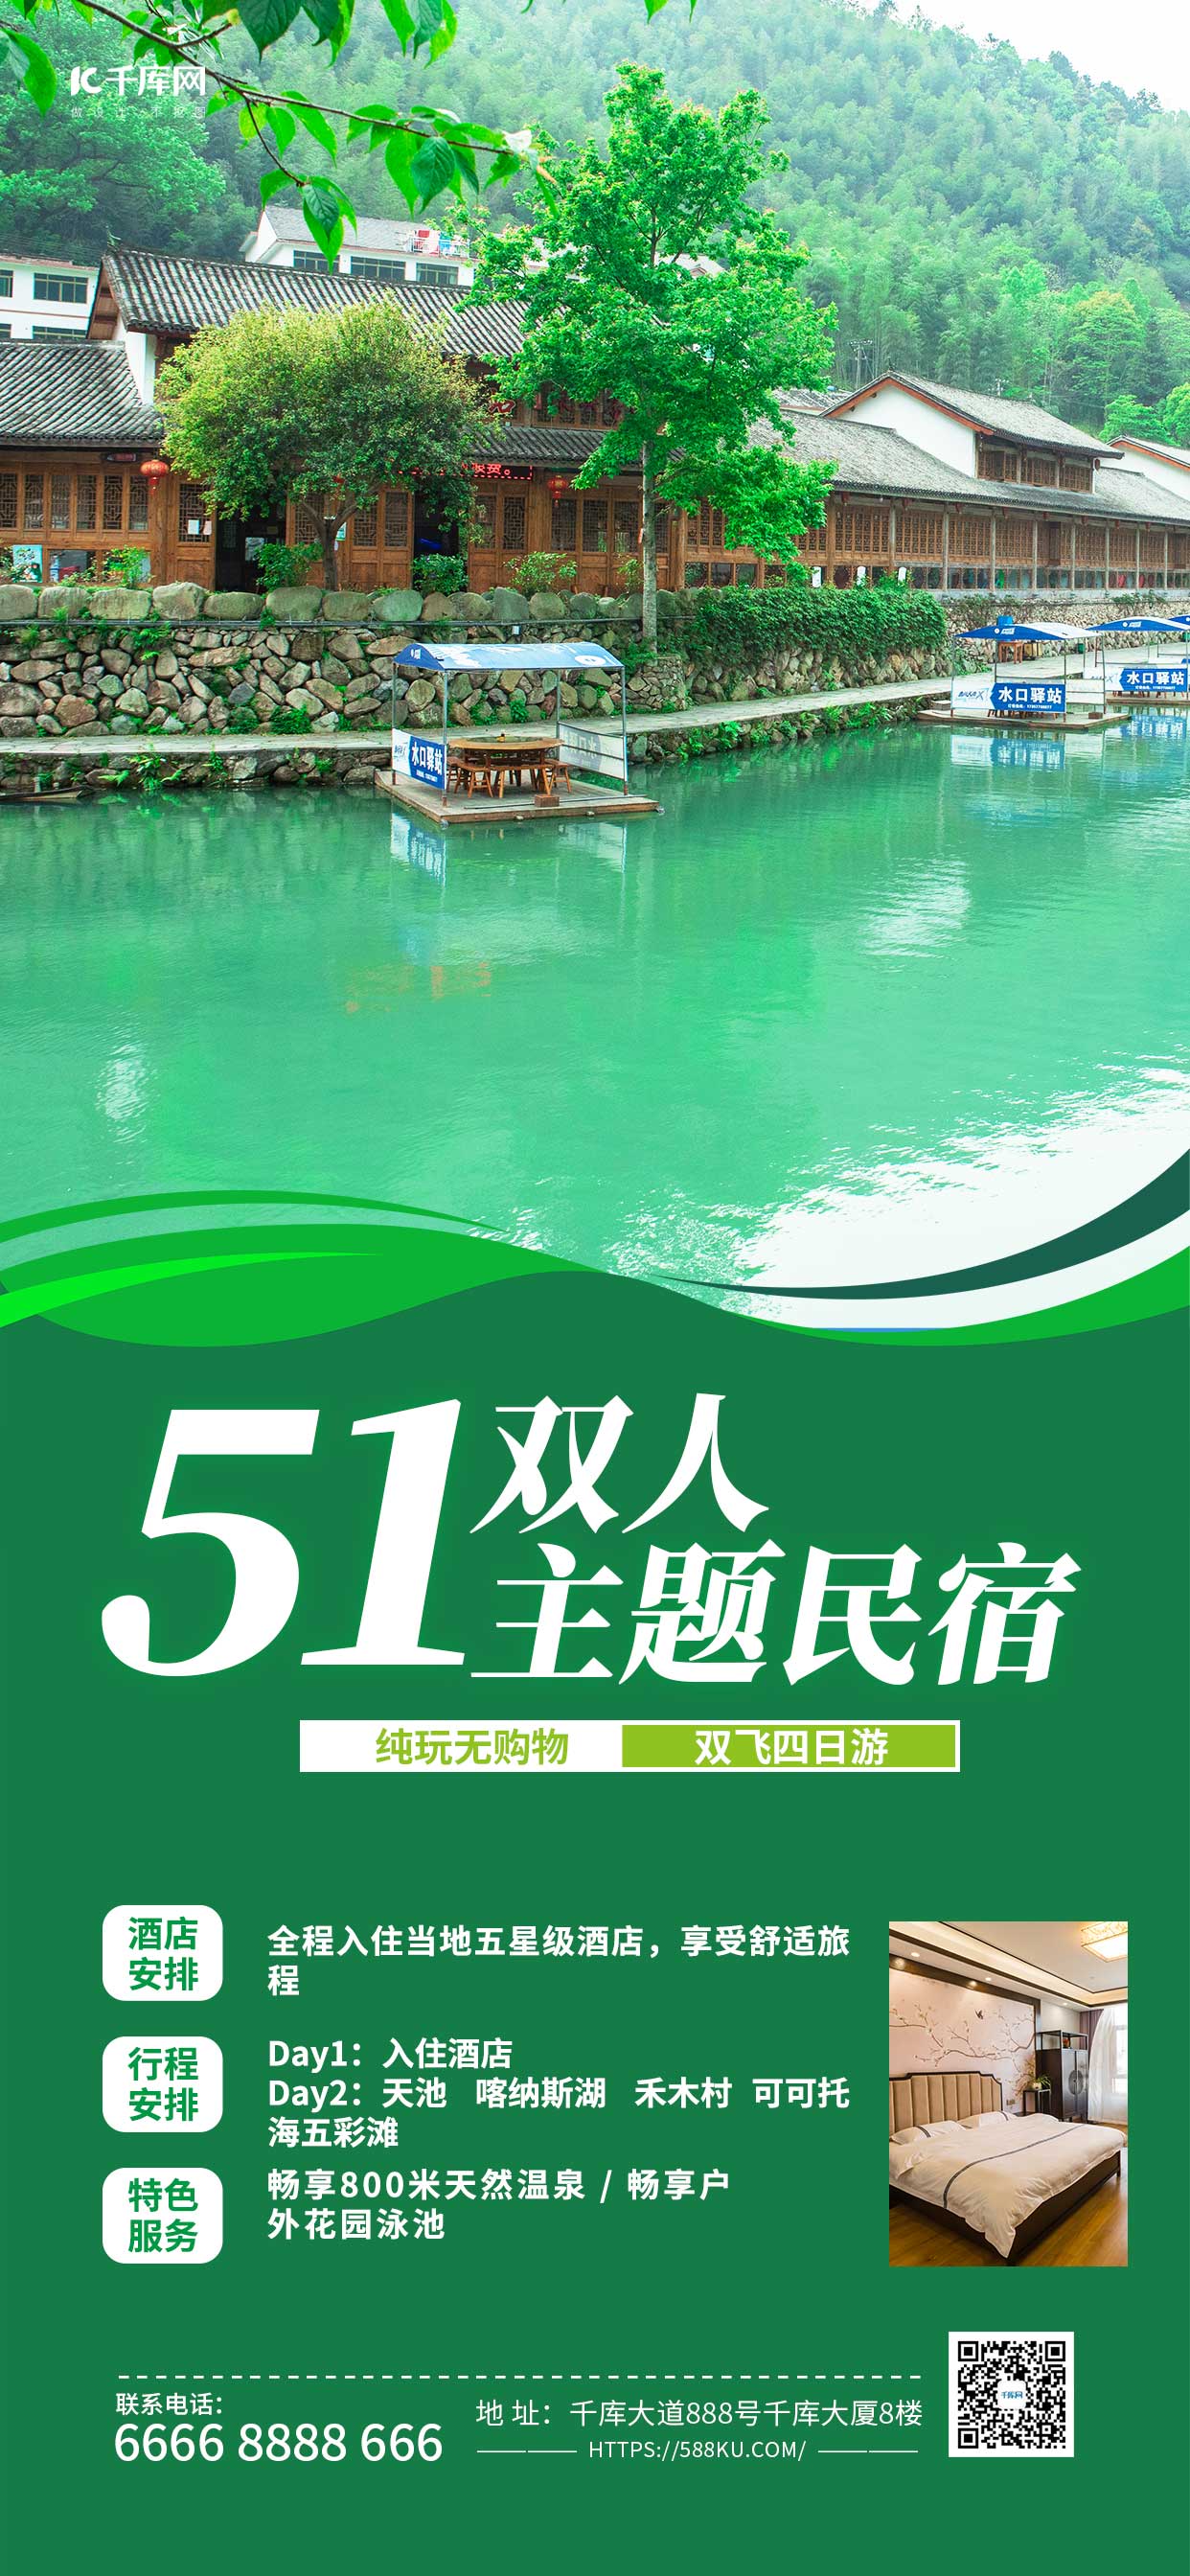 51双人主题民宿风景绿色渐变手机海报海报制作模板图片